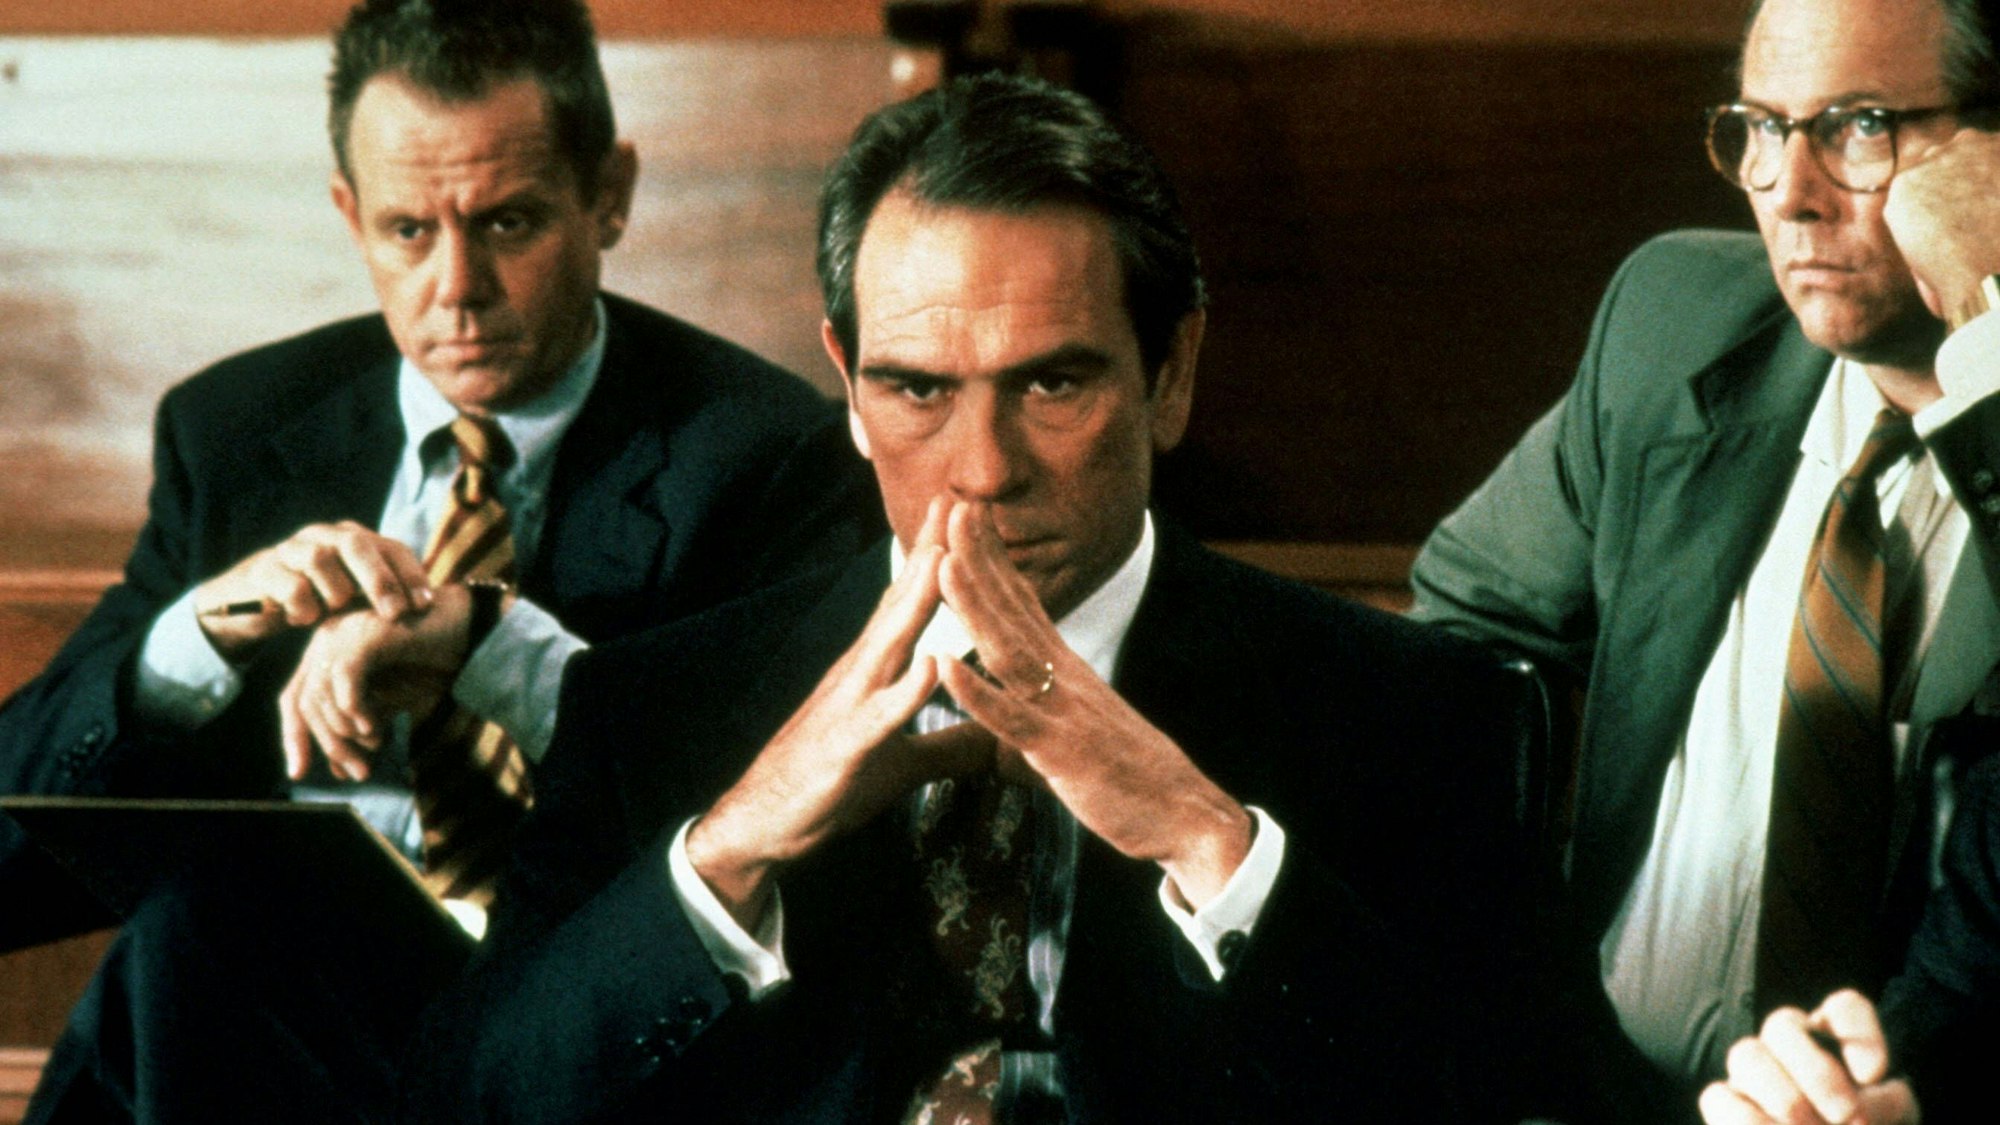 Eine Szene aus dem Film „Der Klient“ zeigt Hauptdarsteller Tommy Lee Jones bei einer Anhörung. Er schaut konzentriert mit vor dem Gesicht zusammengelegten Fingerspitze auf ein unsichtbares Gegenüber.